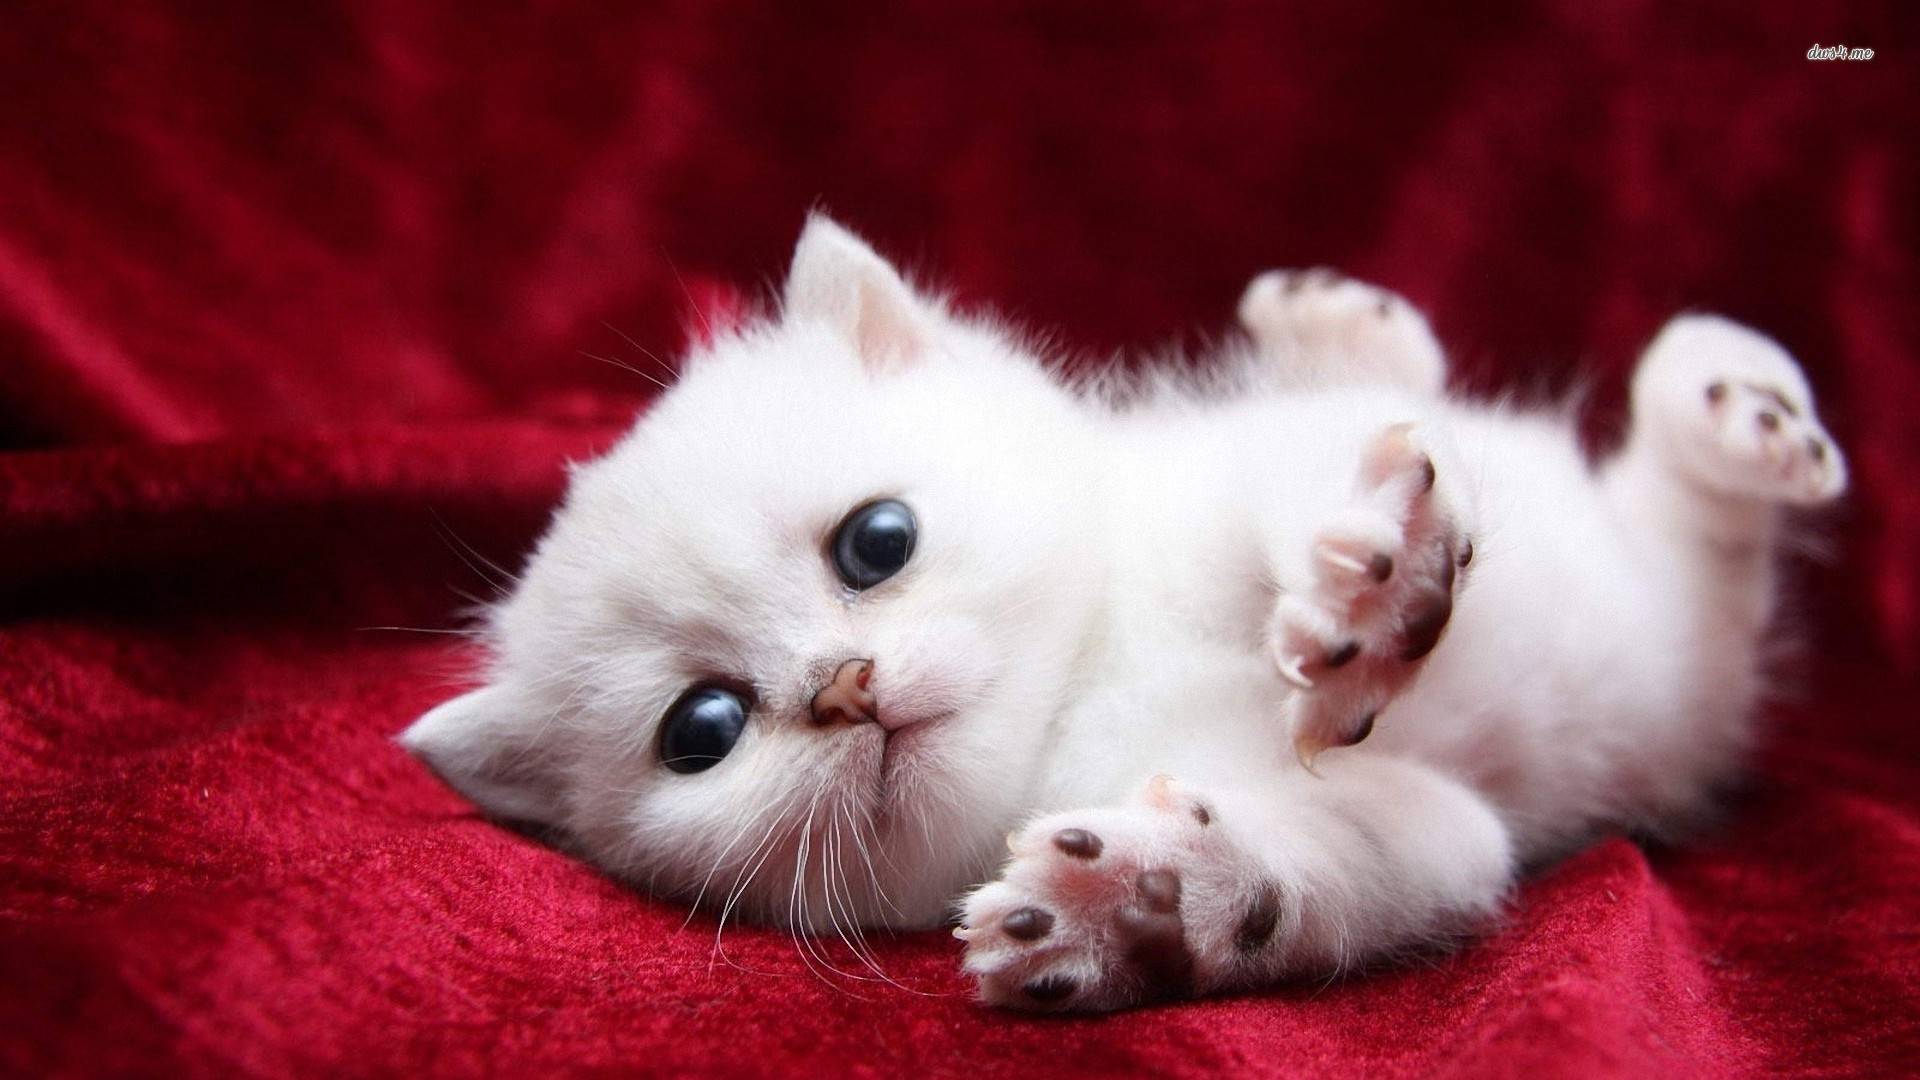 Cute white Kitty